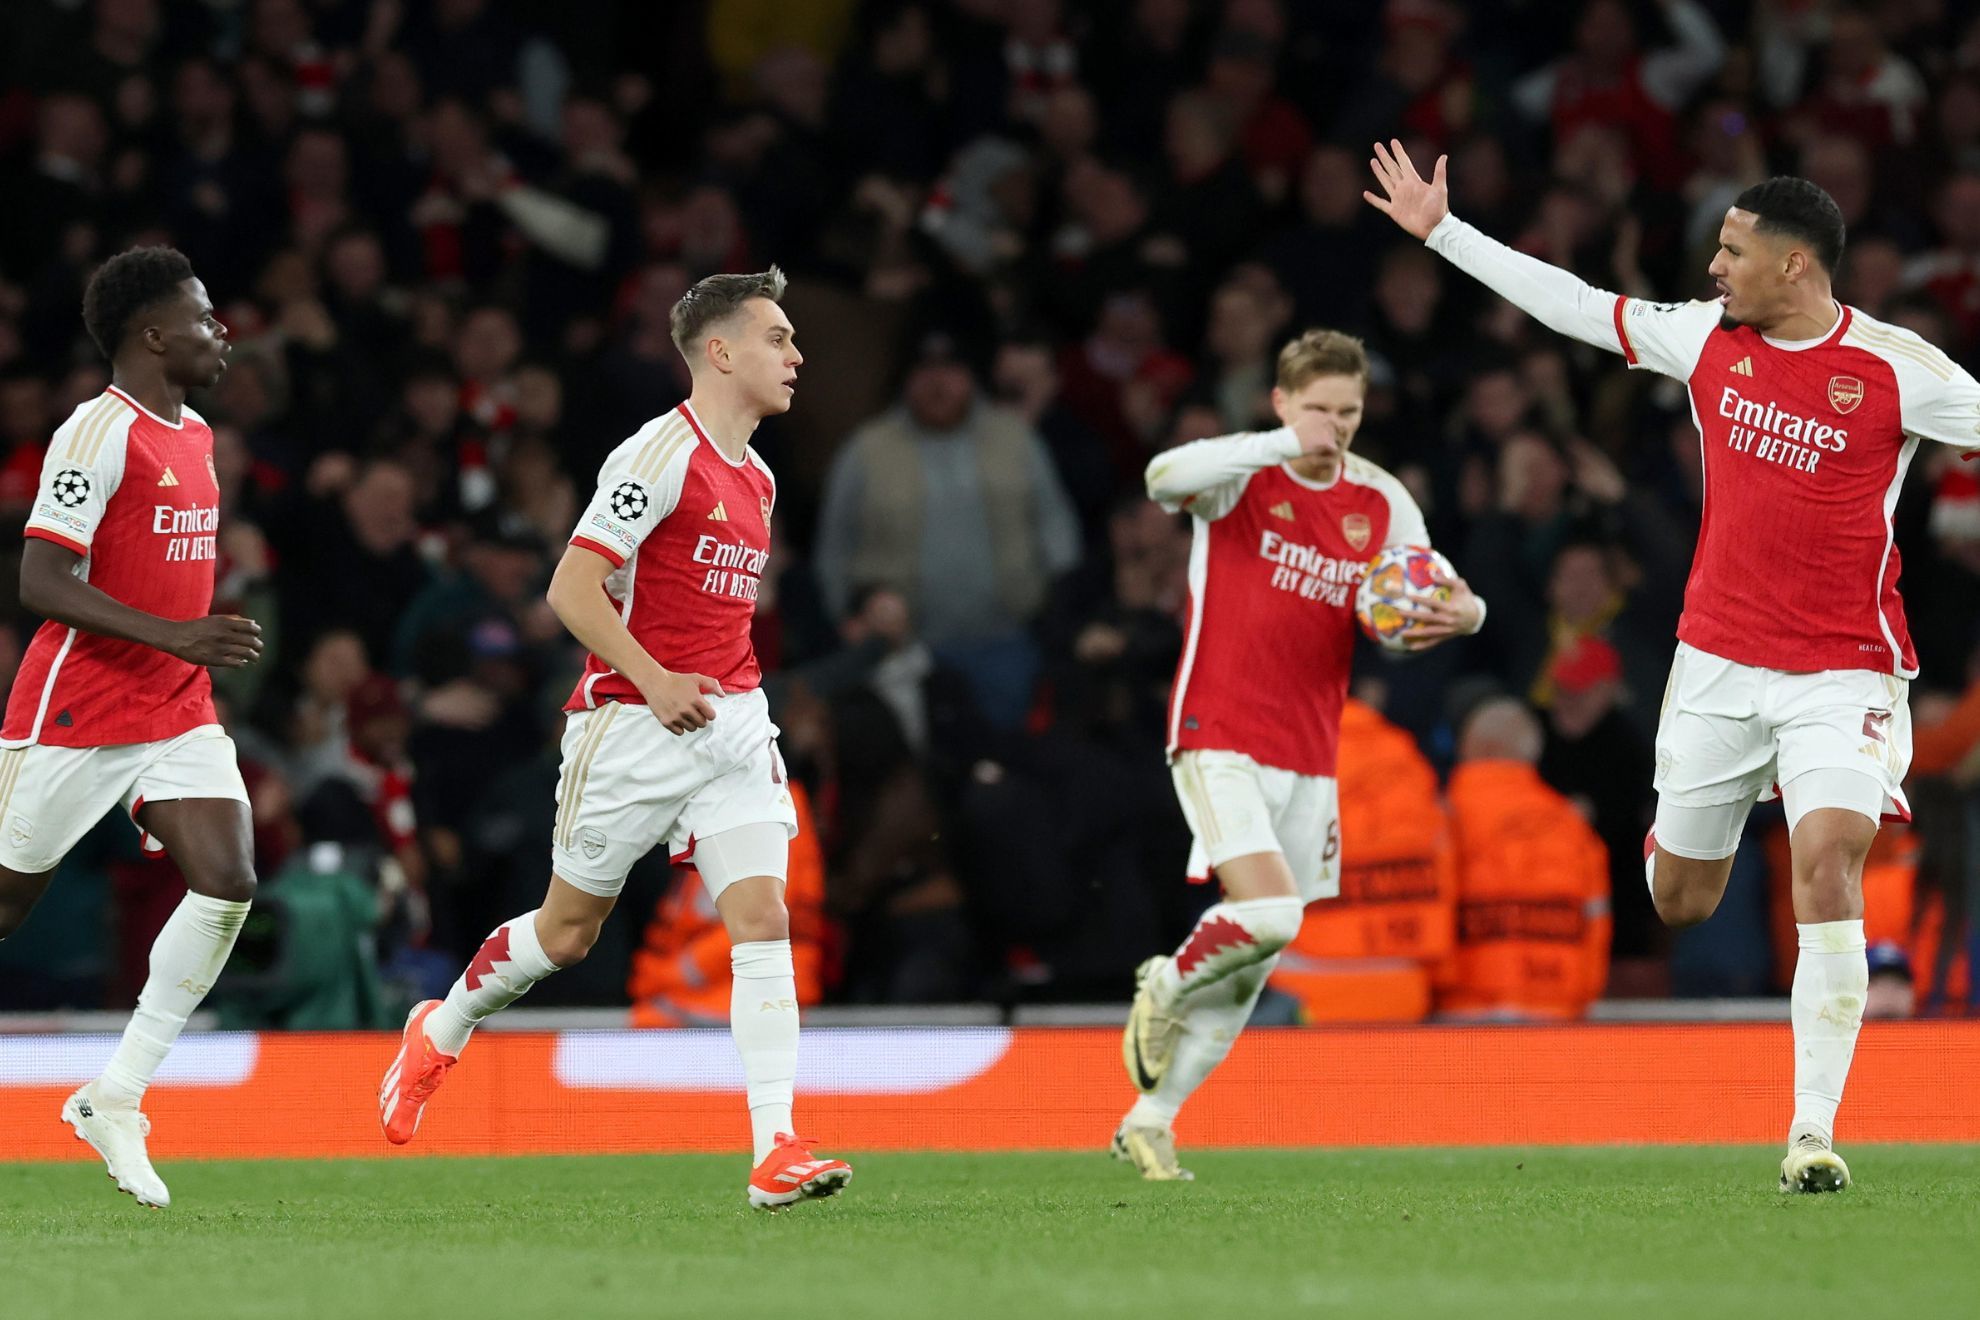 Arsenal - Aston Villa: resumen, resultado y goles